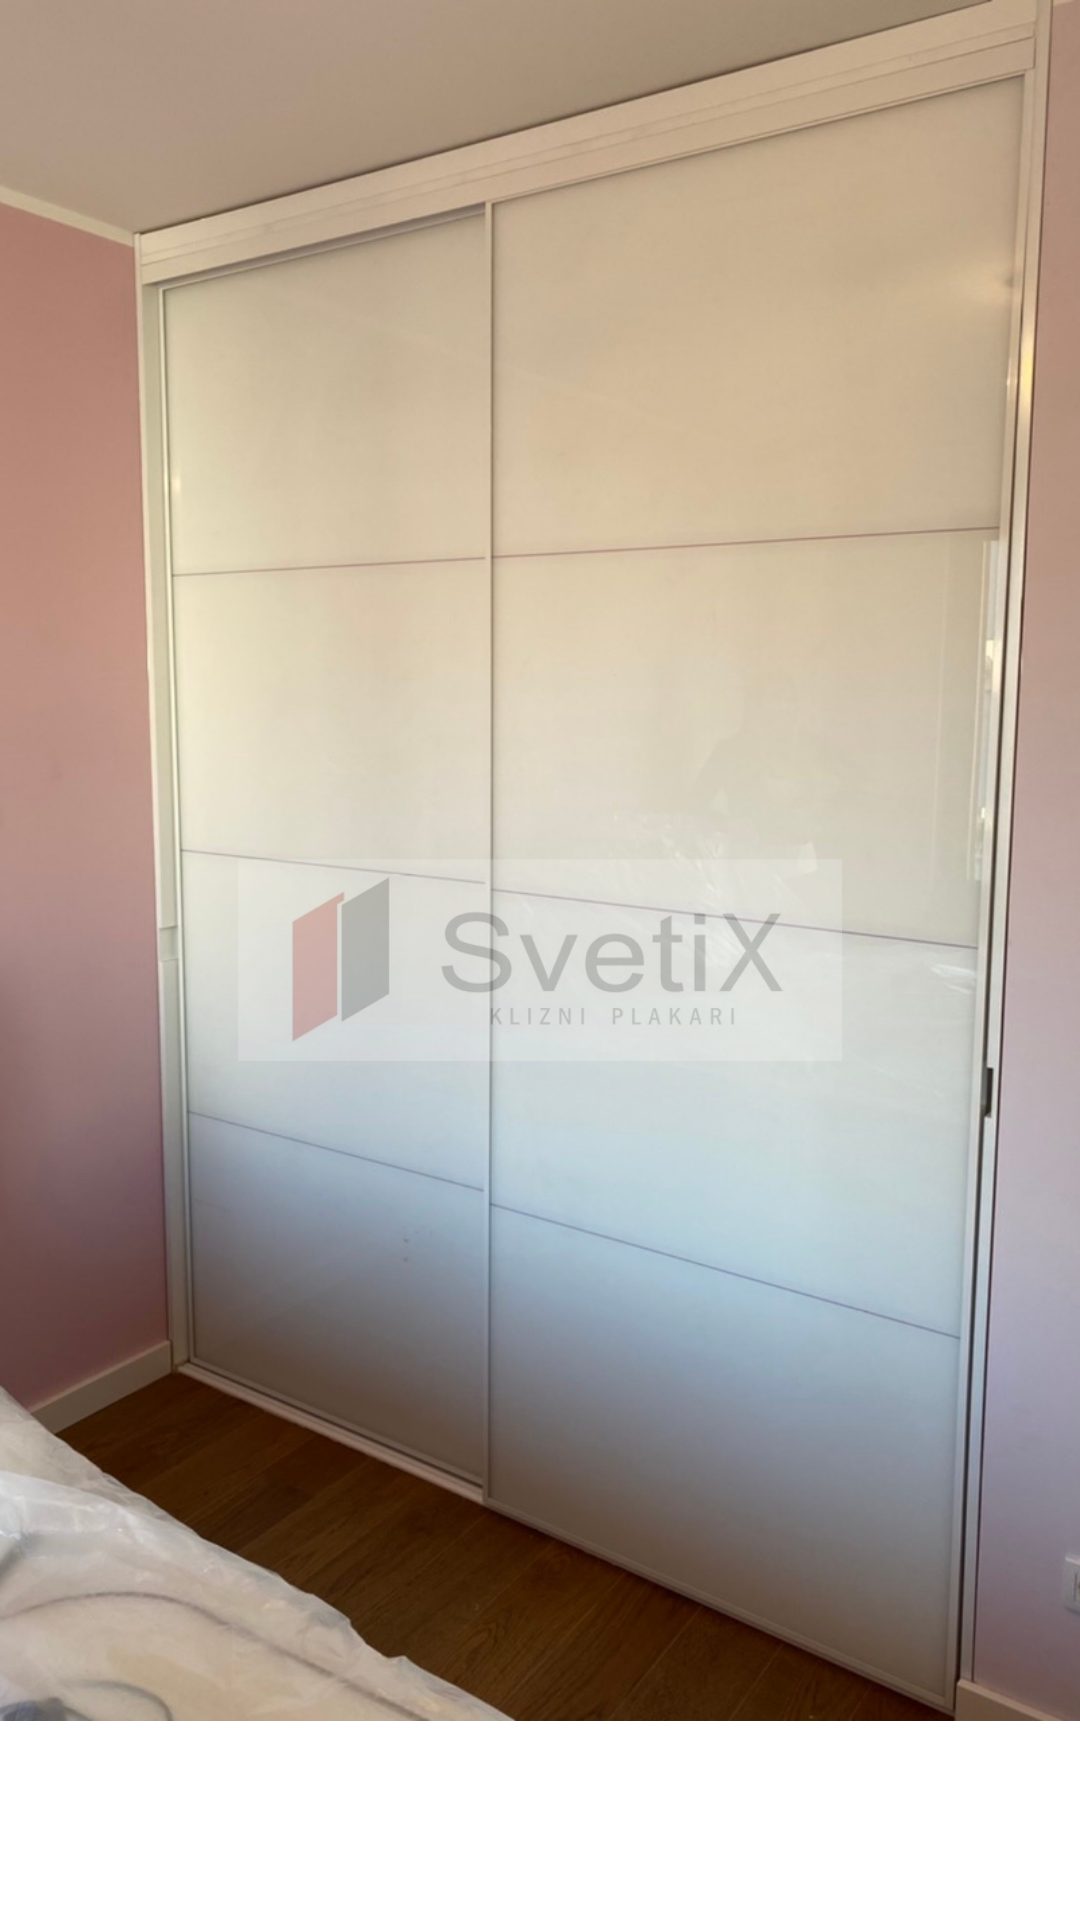 Klizni plakar SVETIX - klizna vrata SVETIX S17 u beloj boji sa belimlacobelom sa peskirnim linijama u sivoj boji - Farbani medijapan sa urezom za lamo otvaranje 